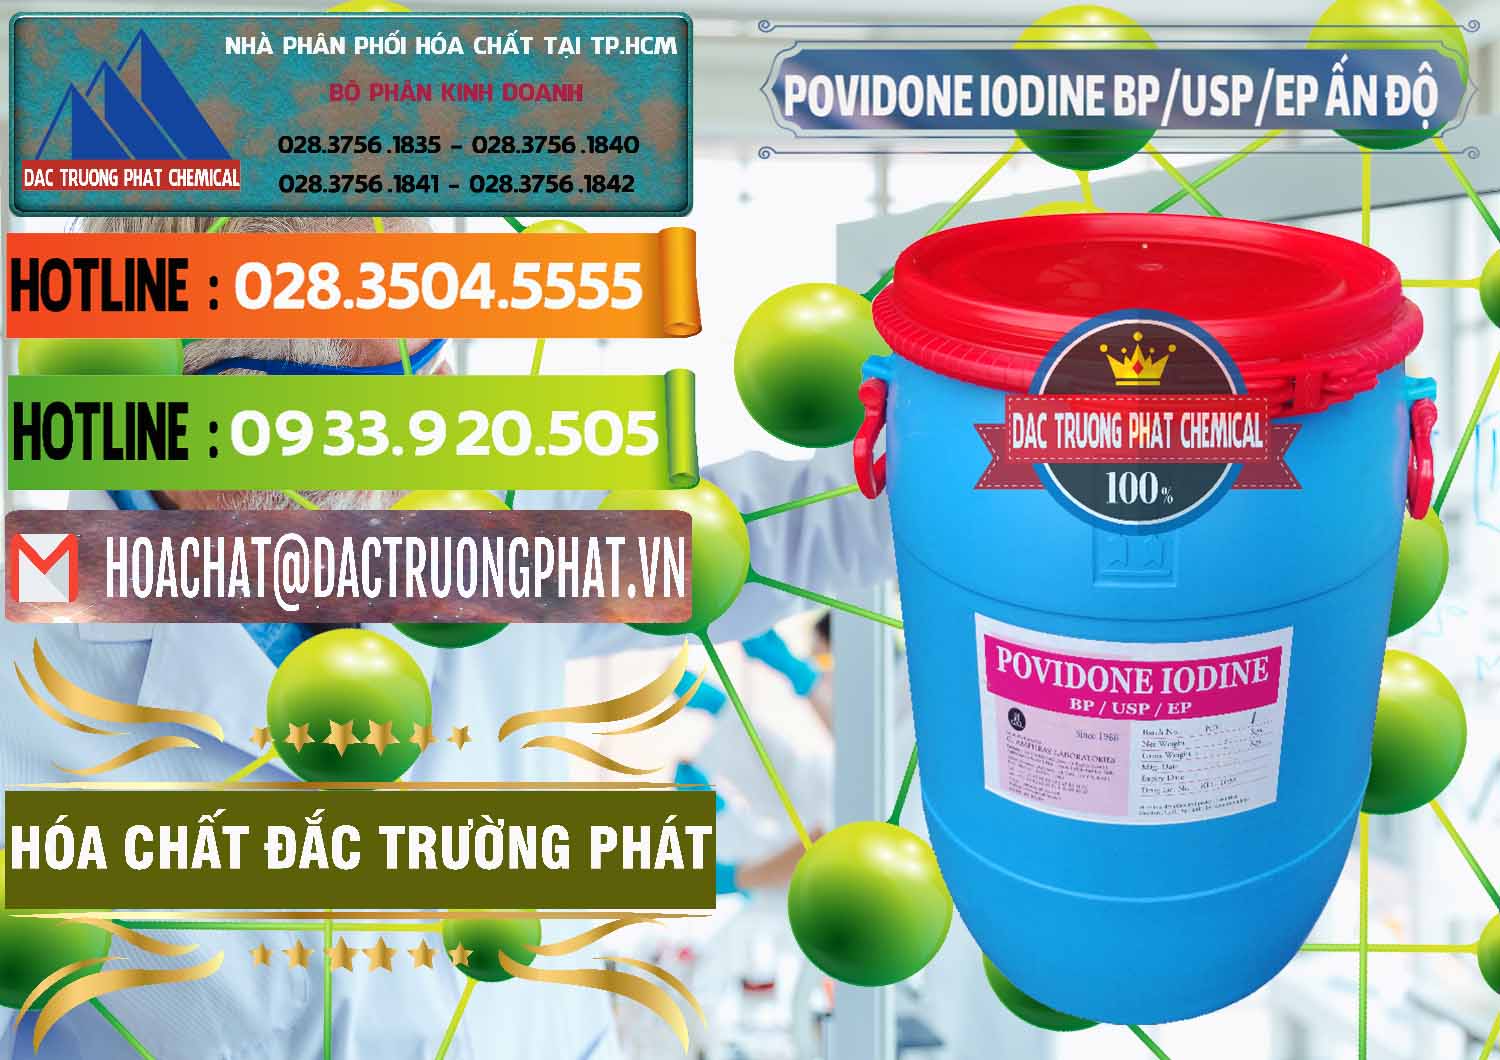 Công ty chuyên cung cấp ( bán ) Povidone Iodine BP USP EP Ấn Độ India - 0318 - Phân phối ( cung cấp ) hóa chất tại TP.HCM - cungcaphoachat.com.vn